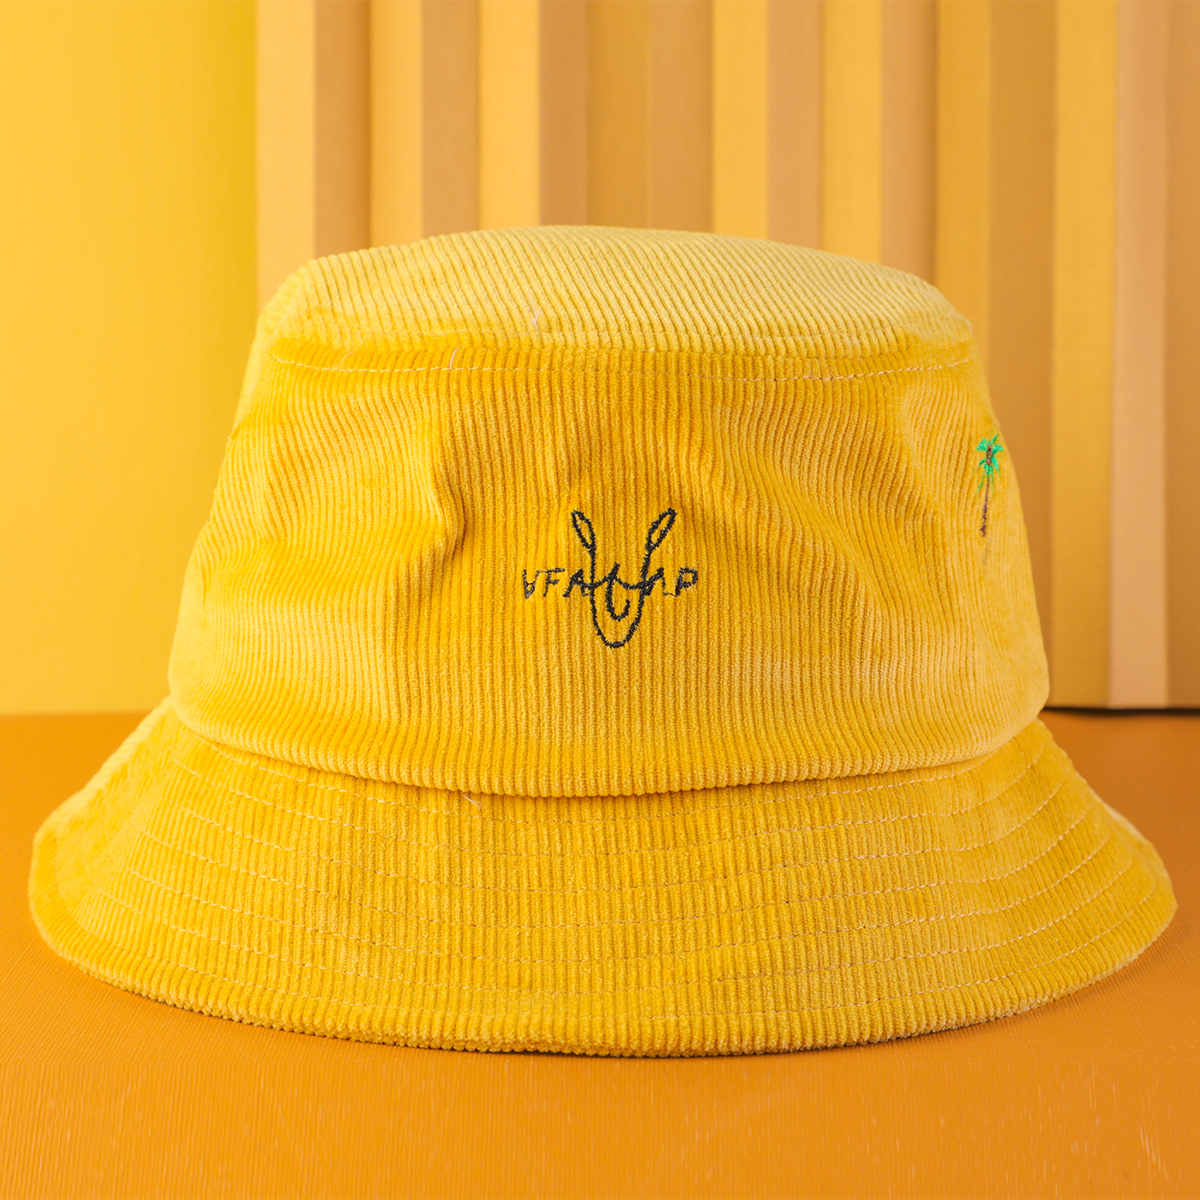 chapéus do bordado do veludo de algodão amarelo do logotipo do vfa do bordado feitos sob encomenda